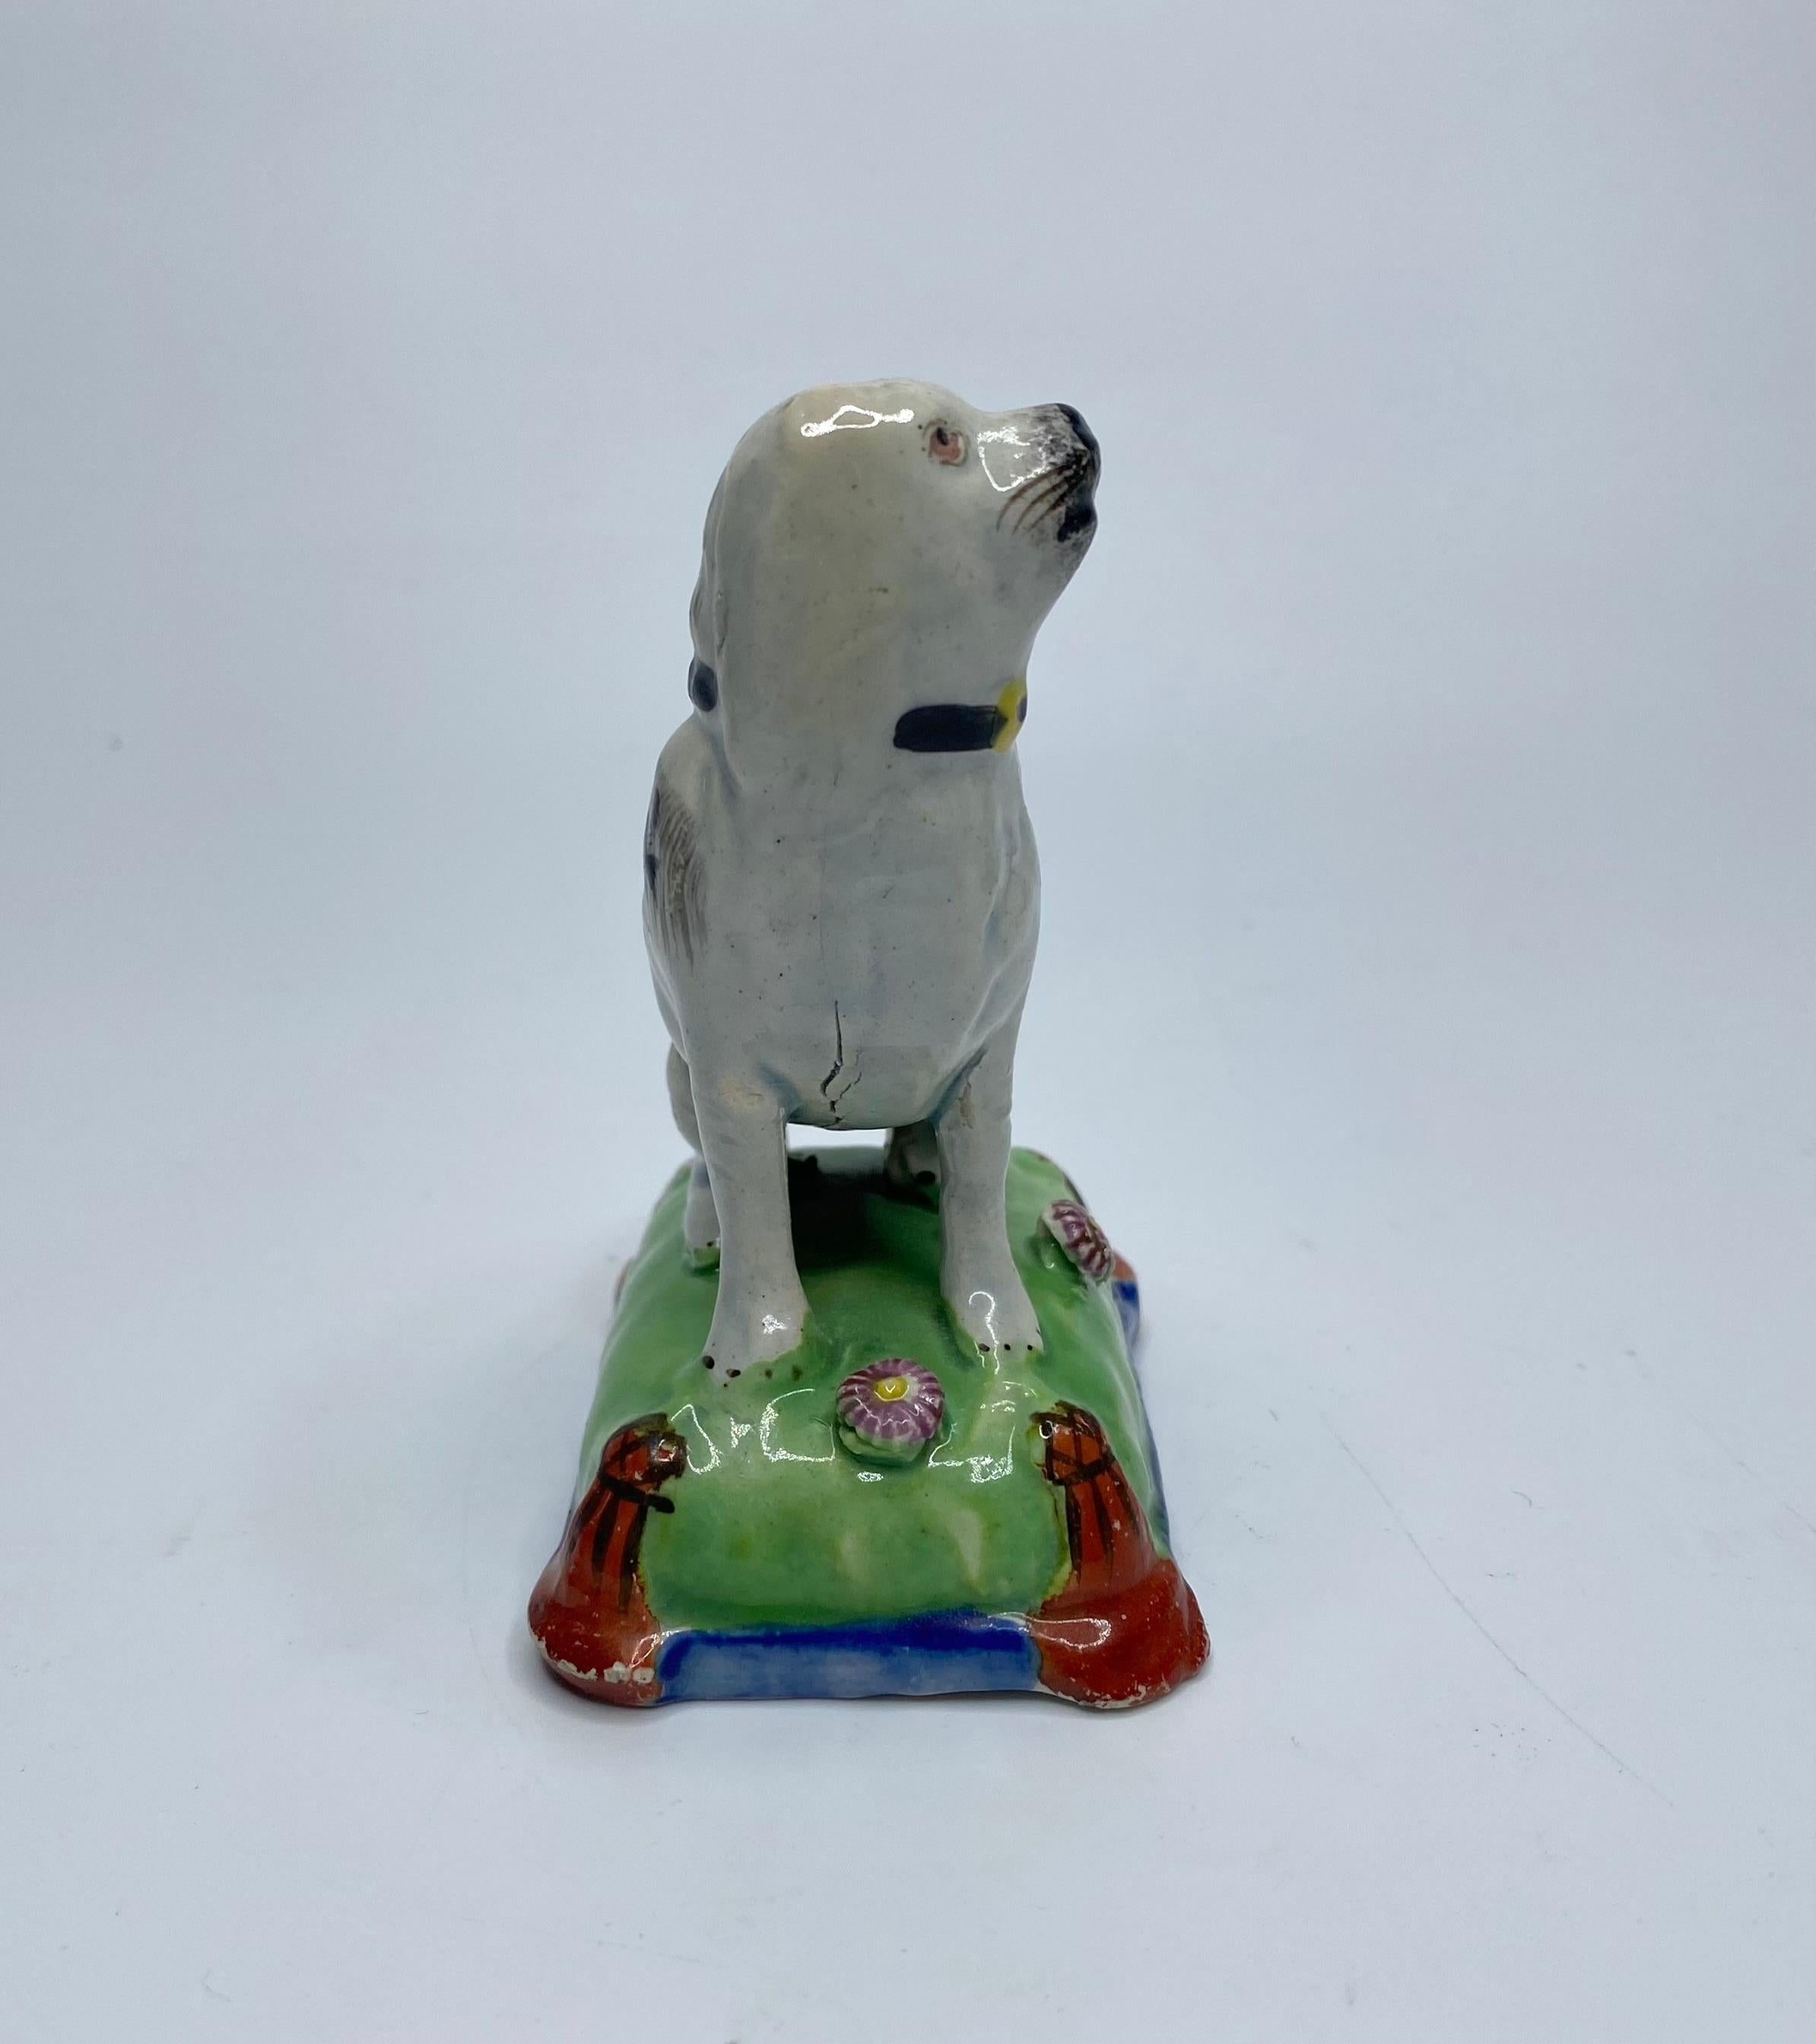 Sitzender Hund aus Staffordshire-Keramikperlen, um 1830. Attraktiv modelliert, als schwarz gefleckter Hund, auf einem Kissen sitzend.
Das grün und blau emaillierte Kissen ist mit zwei Blütenköpfen versehen und hat eisenrote Quasten, die an den Ecken